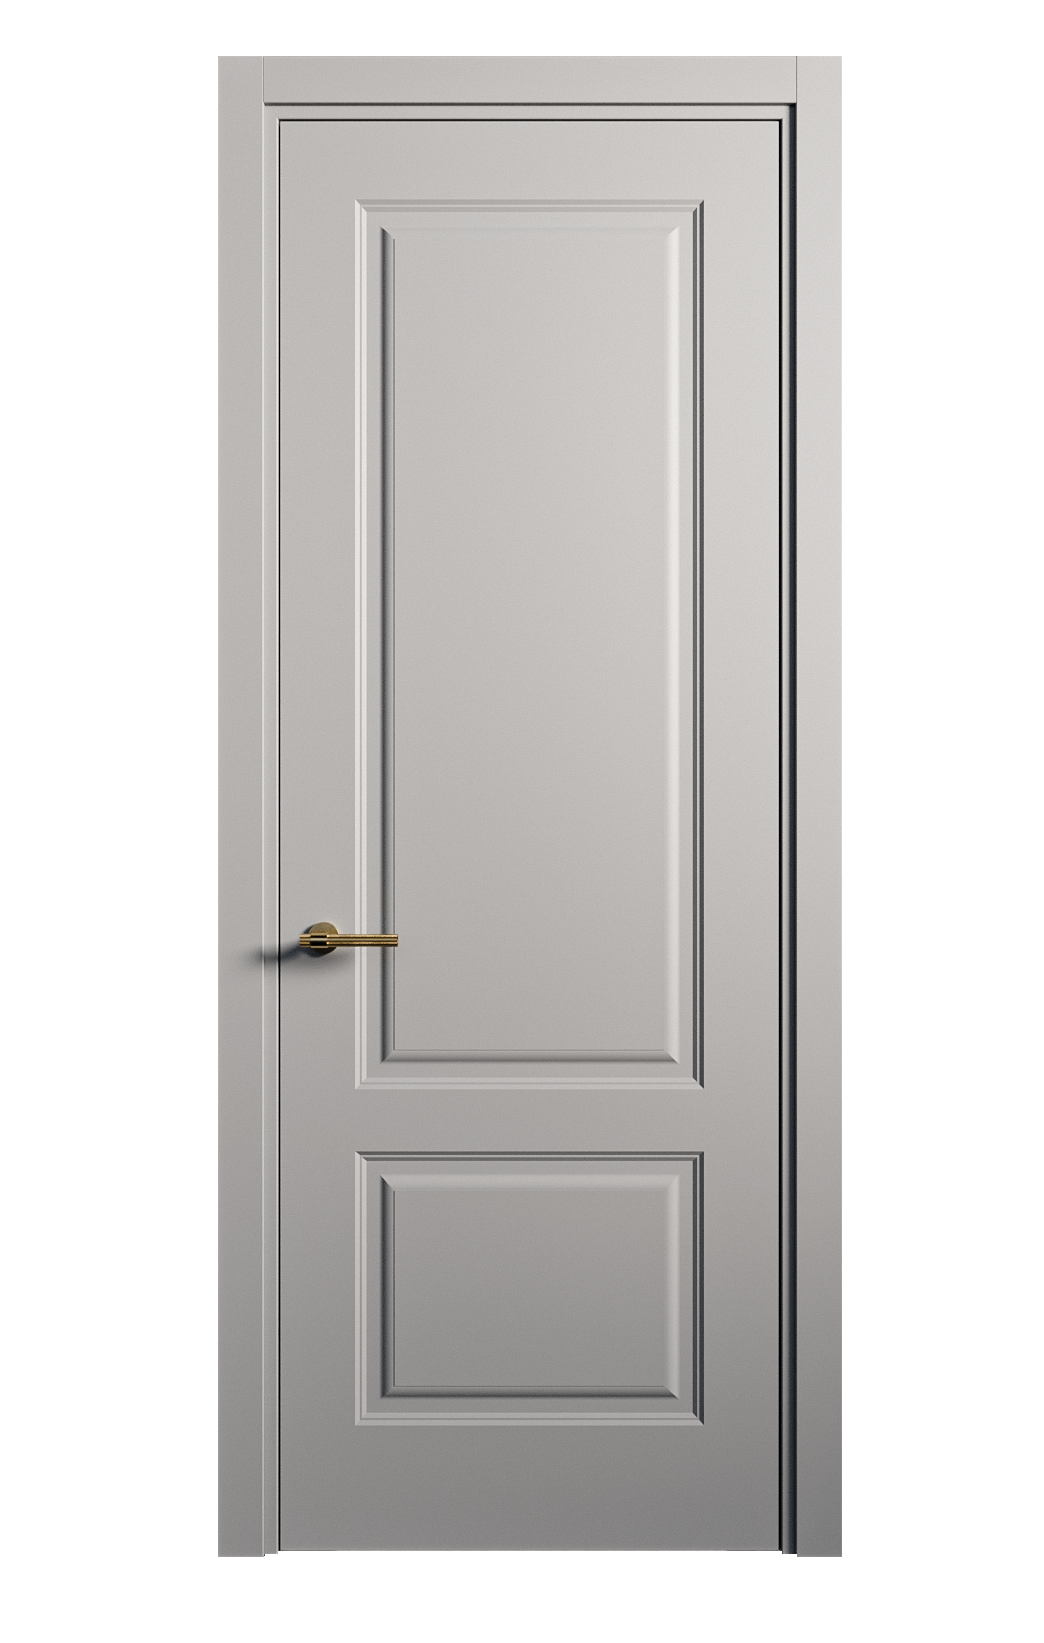 Межкомнатная дверь Вита-1 глухая эмаль ral 7040 26246